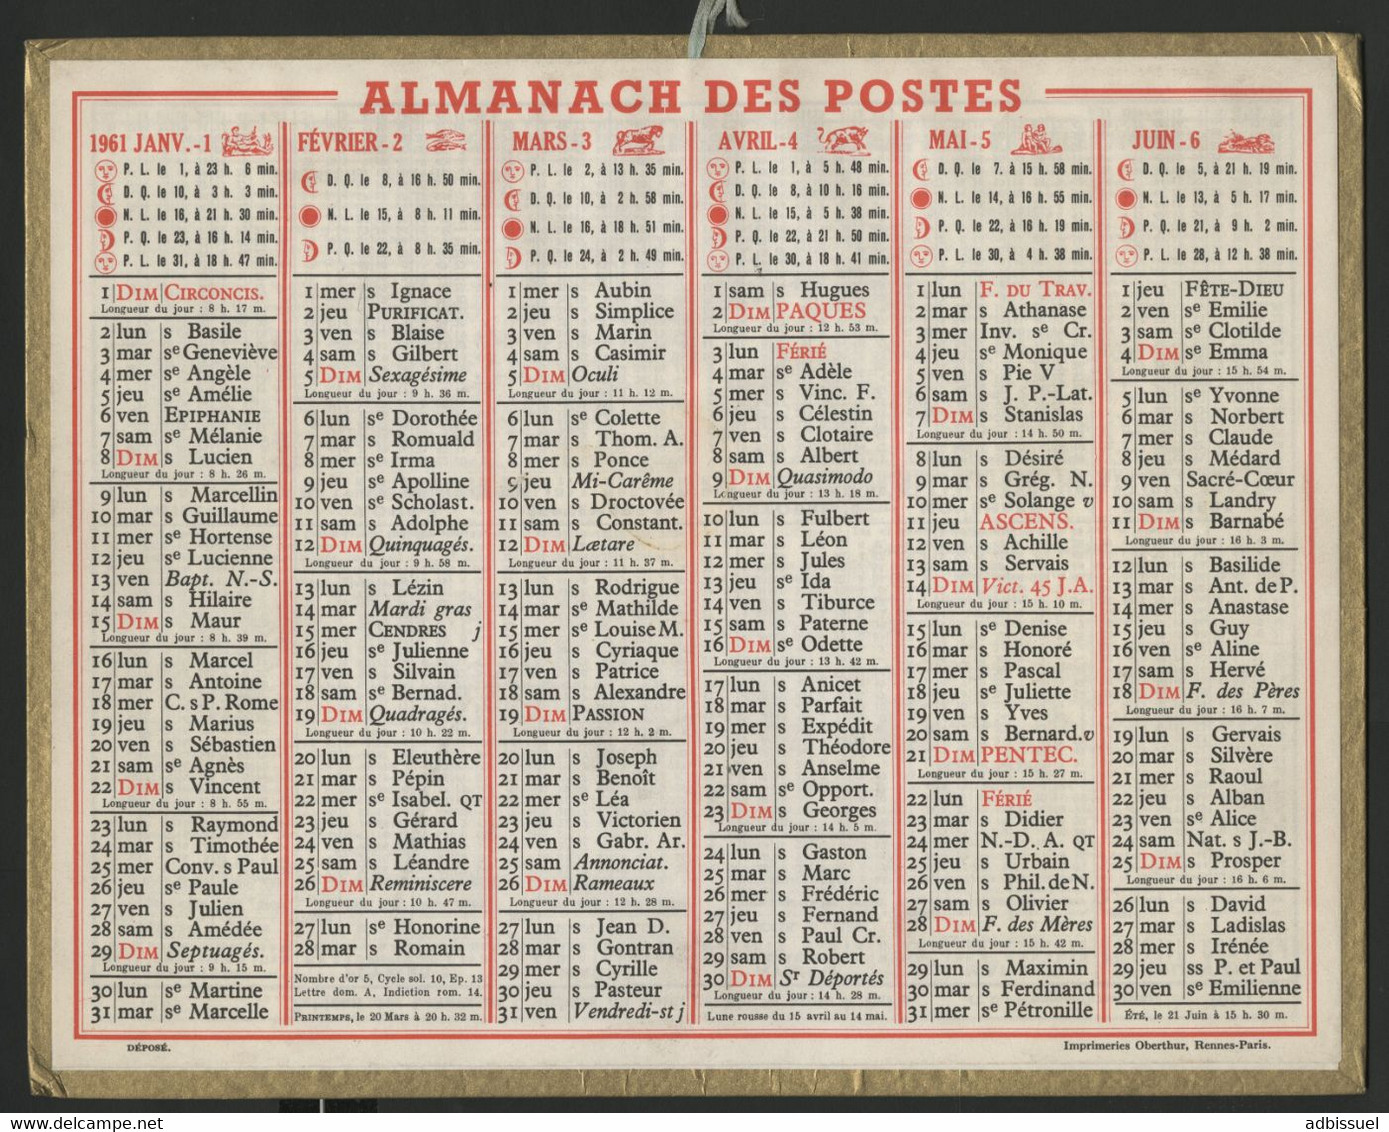 Ensemble de 14 Almanachs de France entre 1947 et 1978. DROME et LOIRE (26 et 42) Voir description détaillée